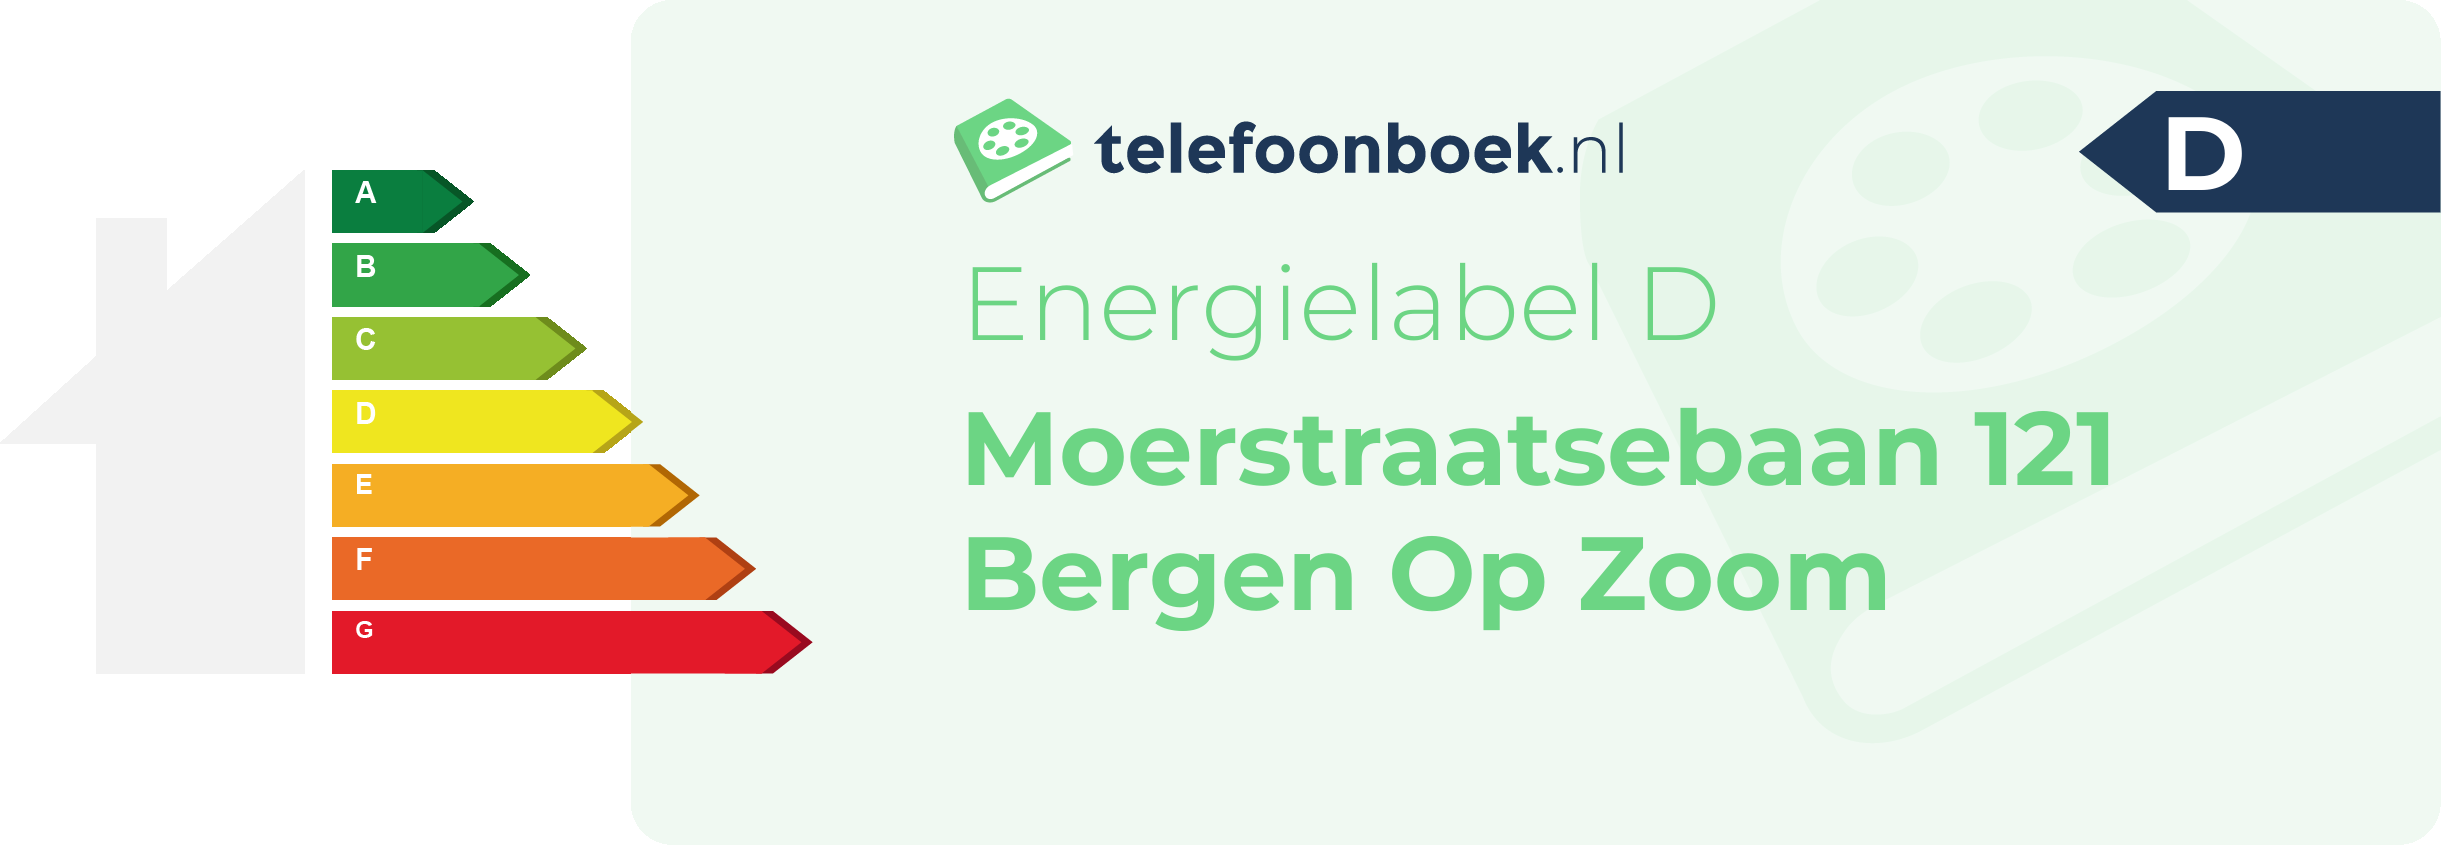 Energielabel Moerstraatsebaan 121 Bergen Op Zoom